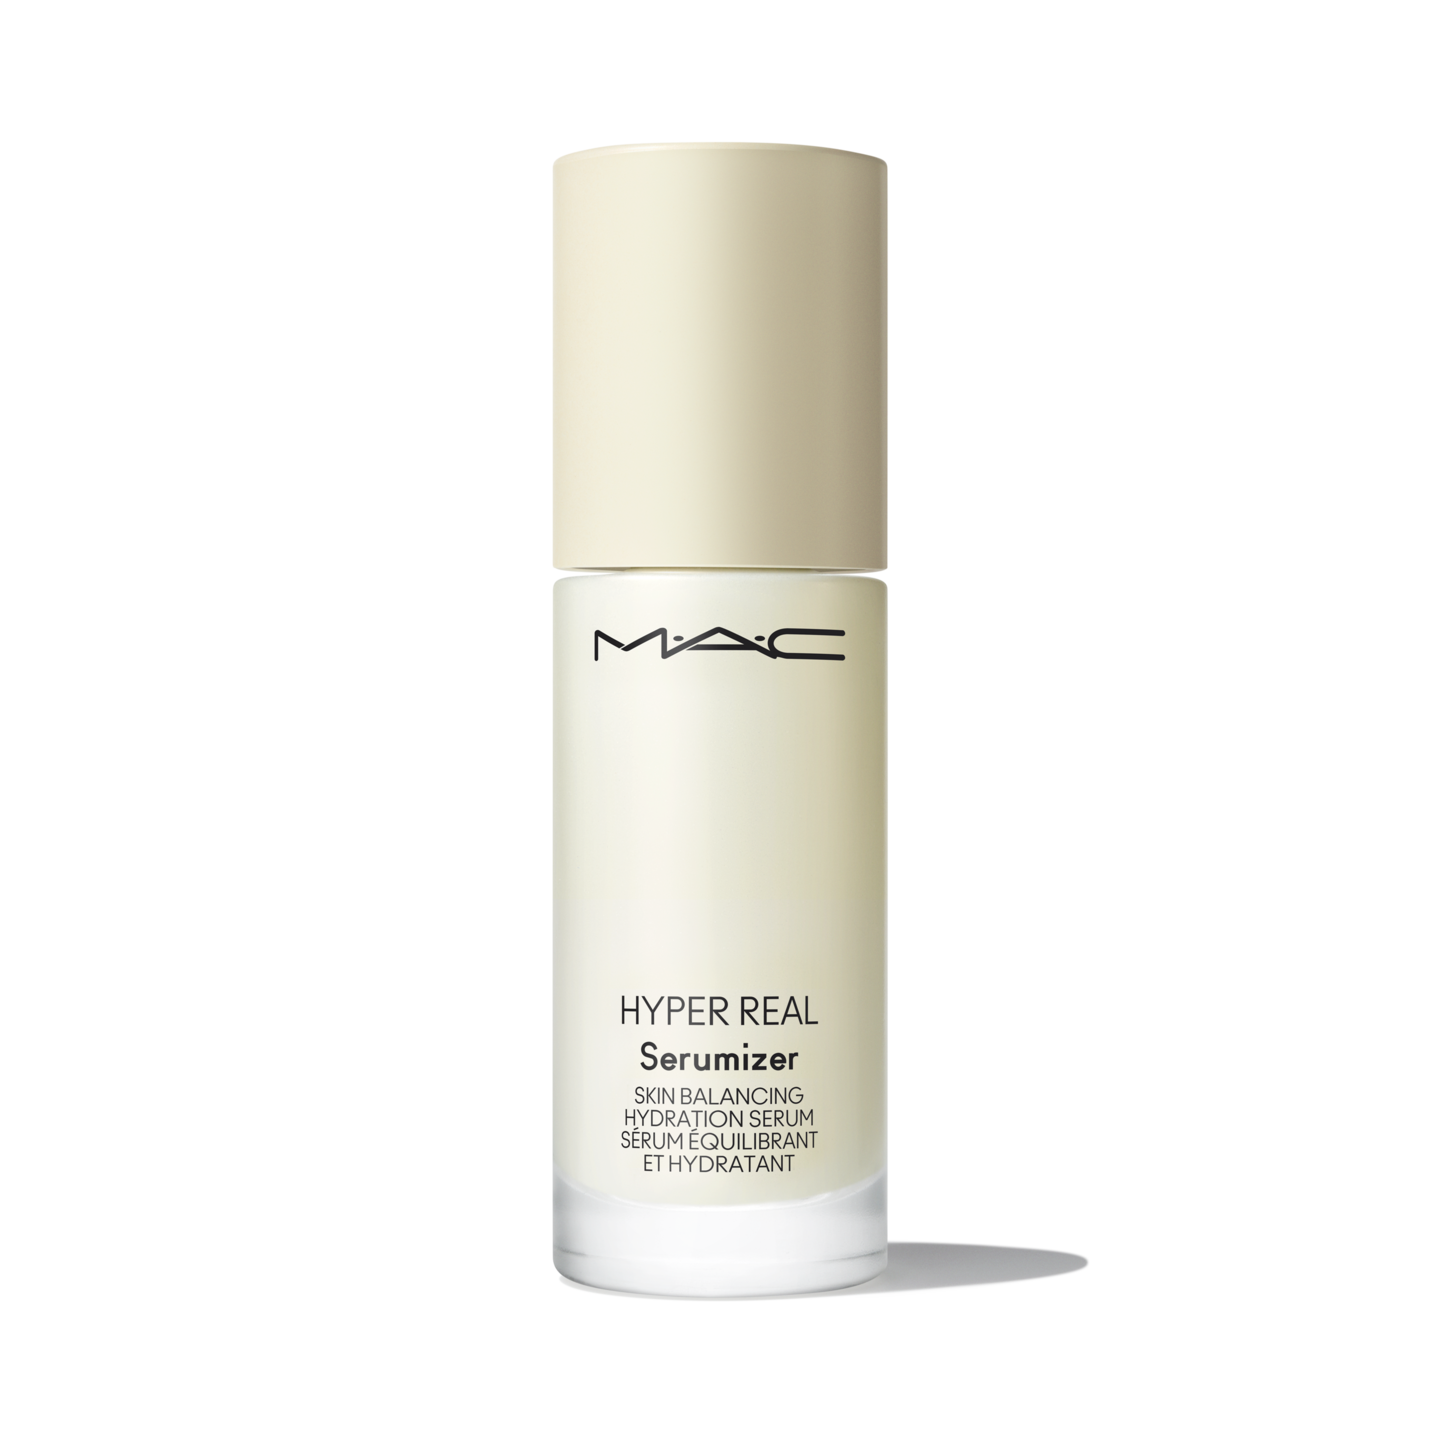 HYPER REAL: La nueva línea de tratamiento de MAC Cosmetics - HIGHXTAR.